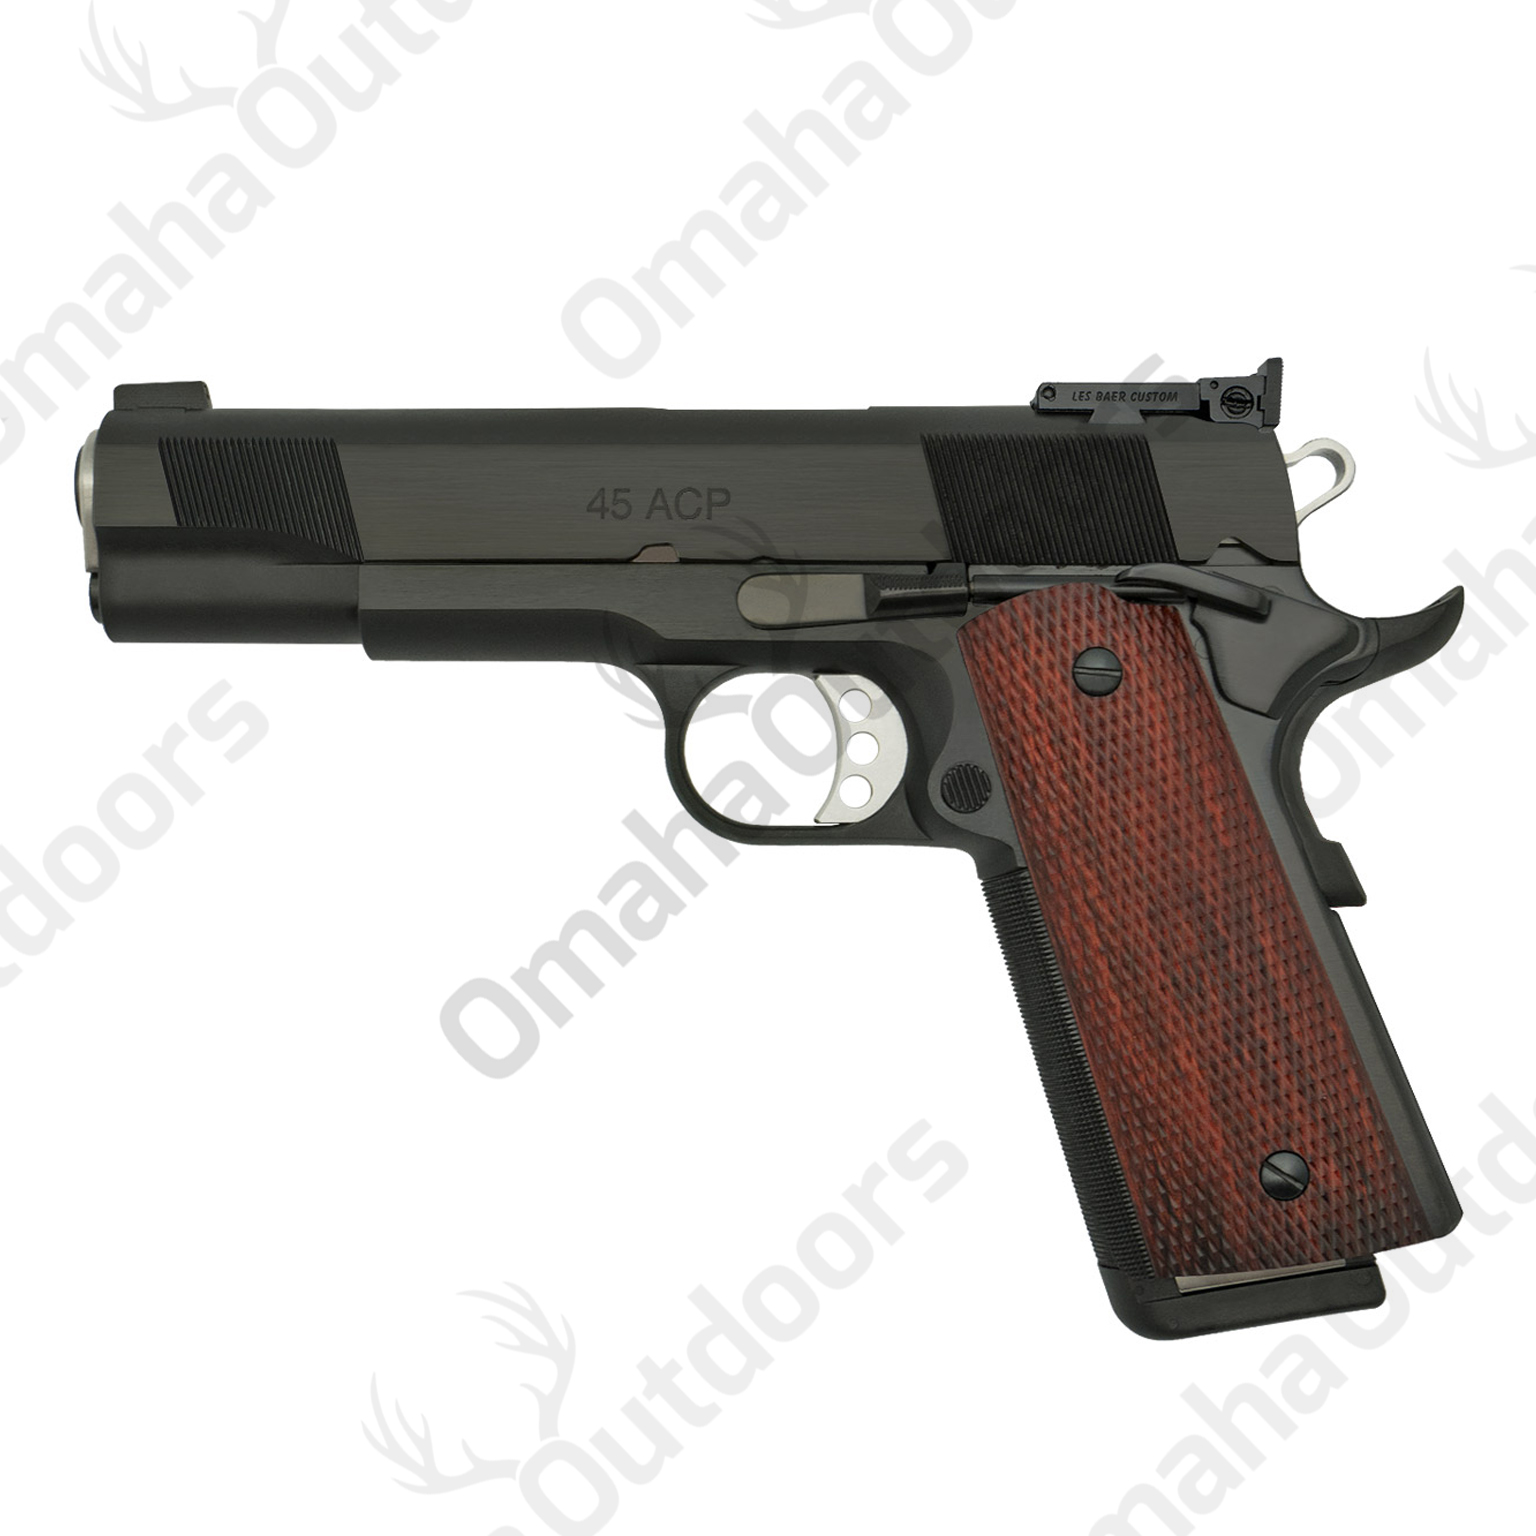 Images of Baer Custom Pistol | 1536x1536